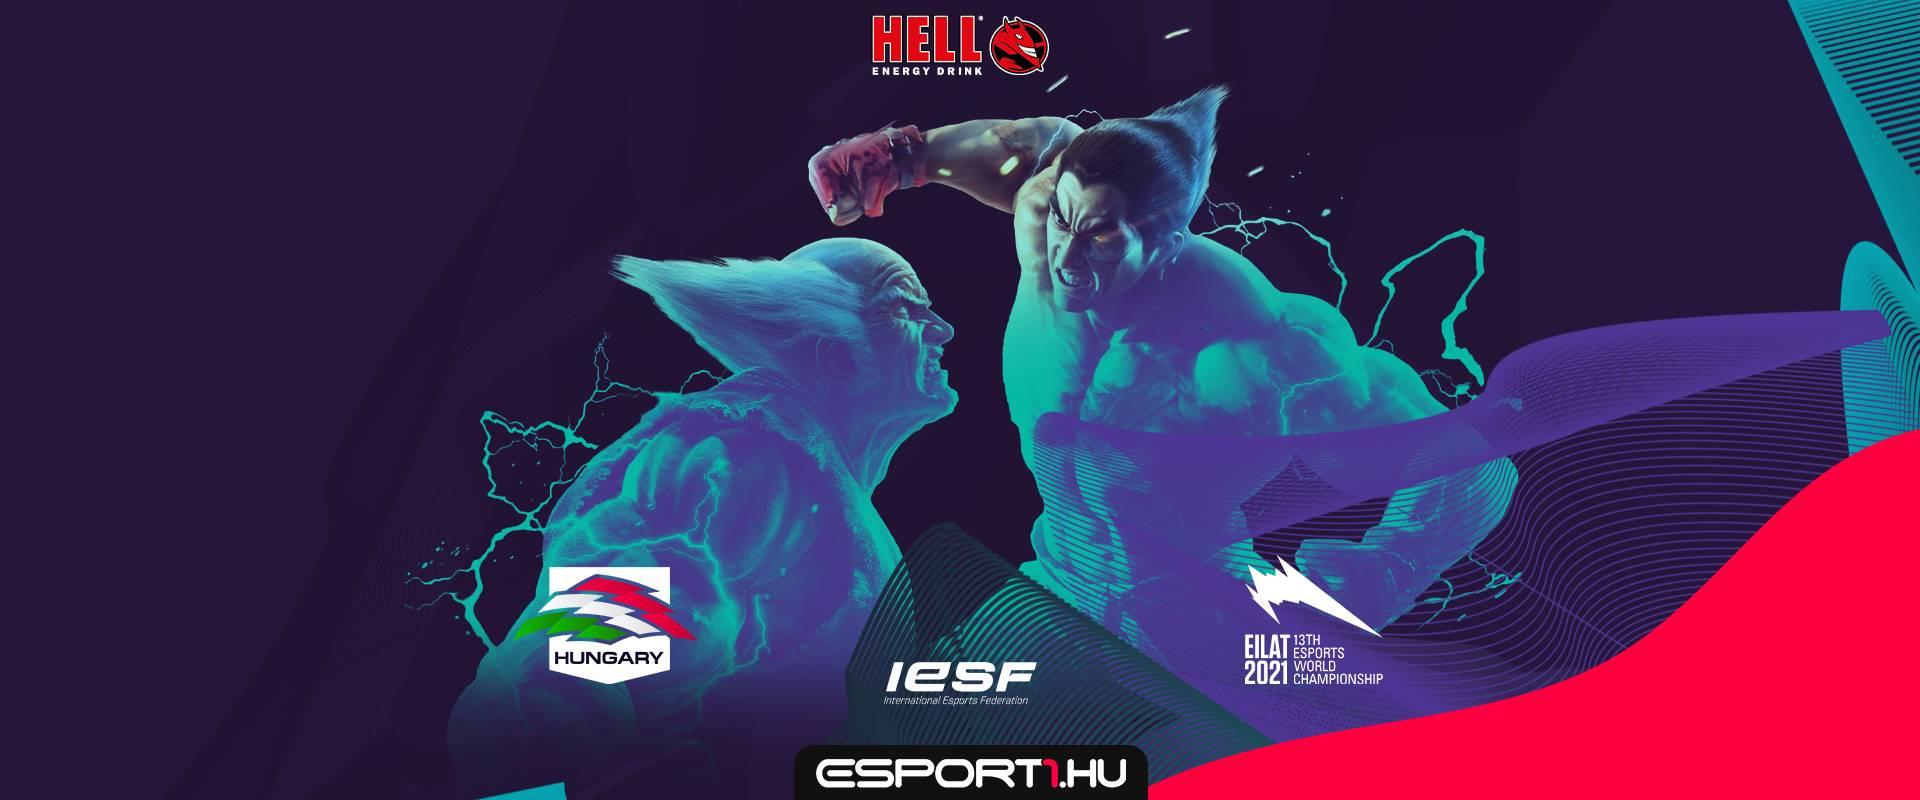 Virtuális ringbe száll a magyar Tekken 7 válogatott játékos a vb szereplésért